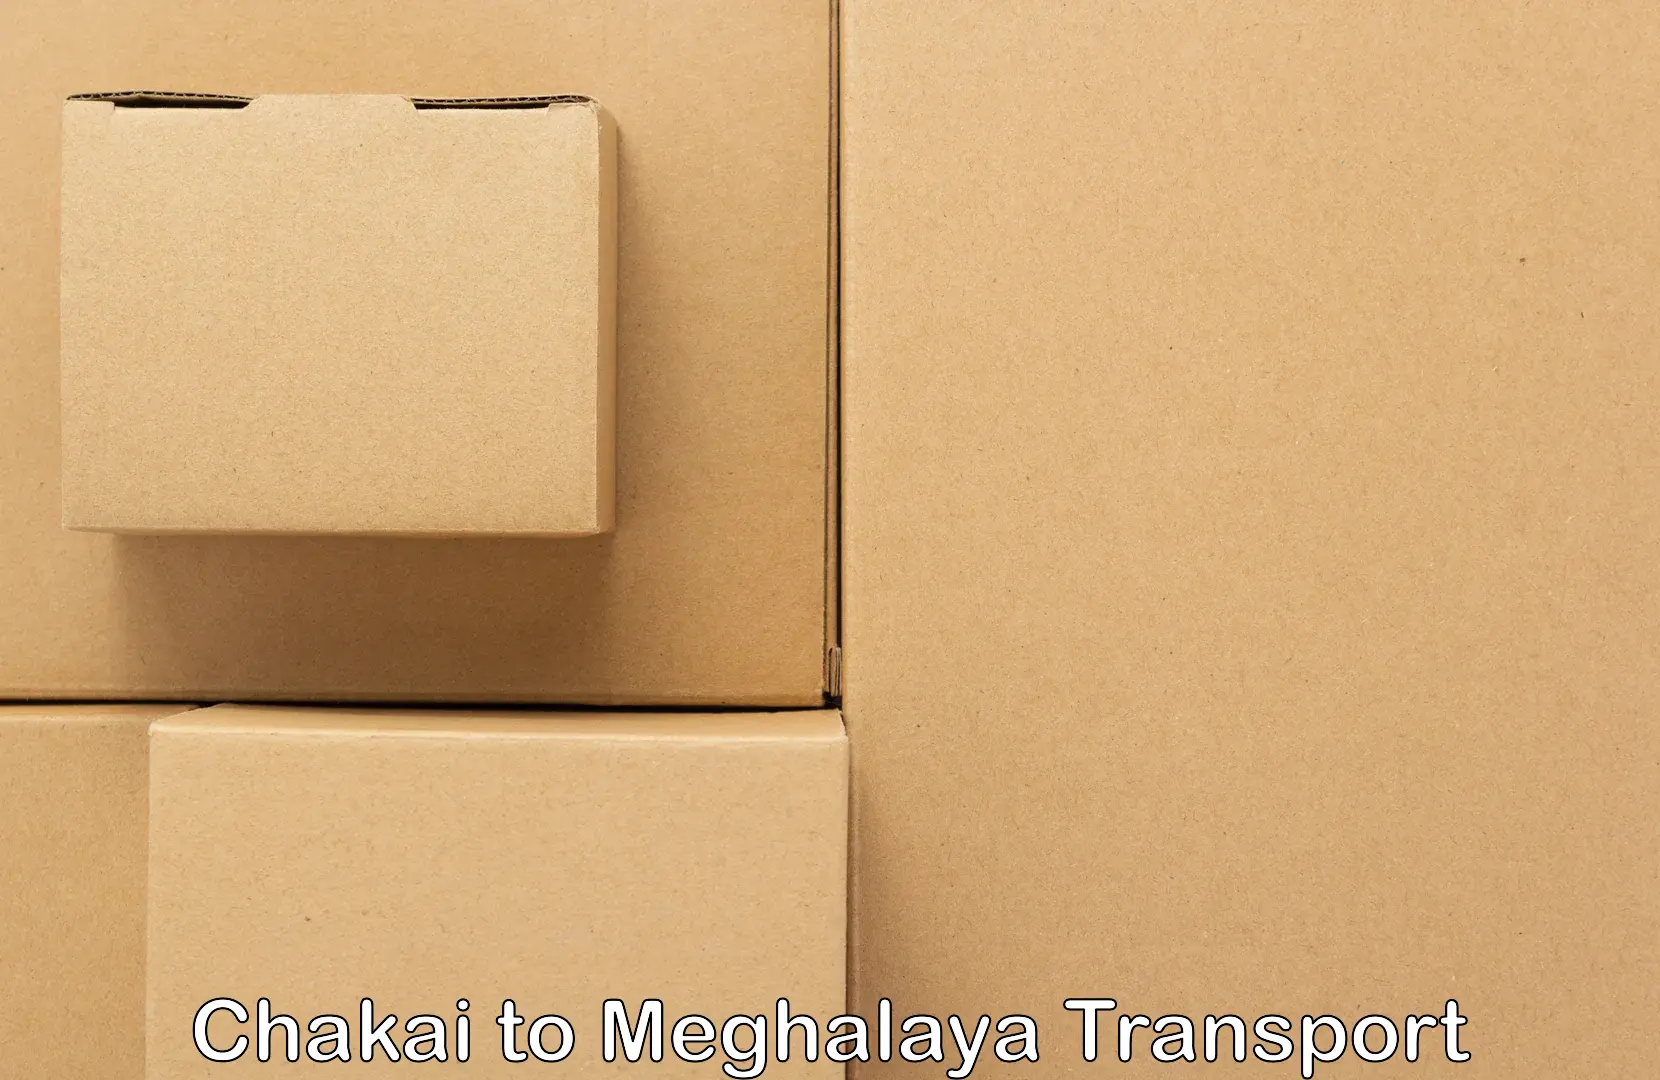 Pick up transport service Chakai to Jowai